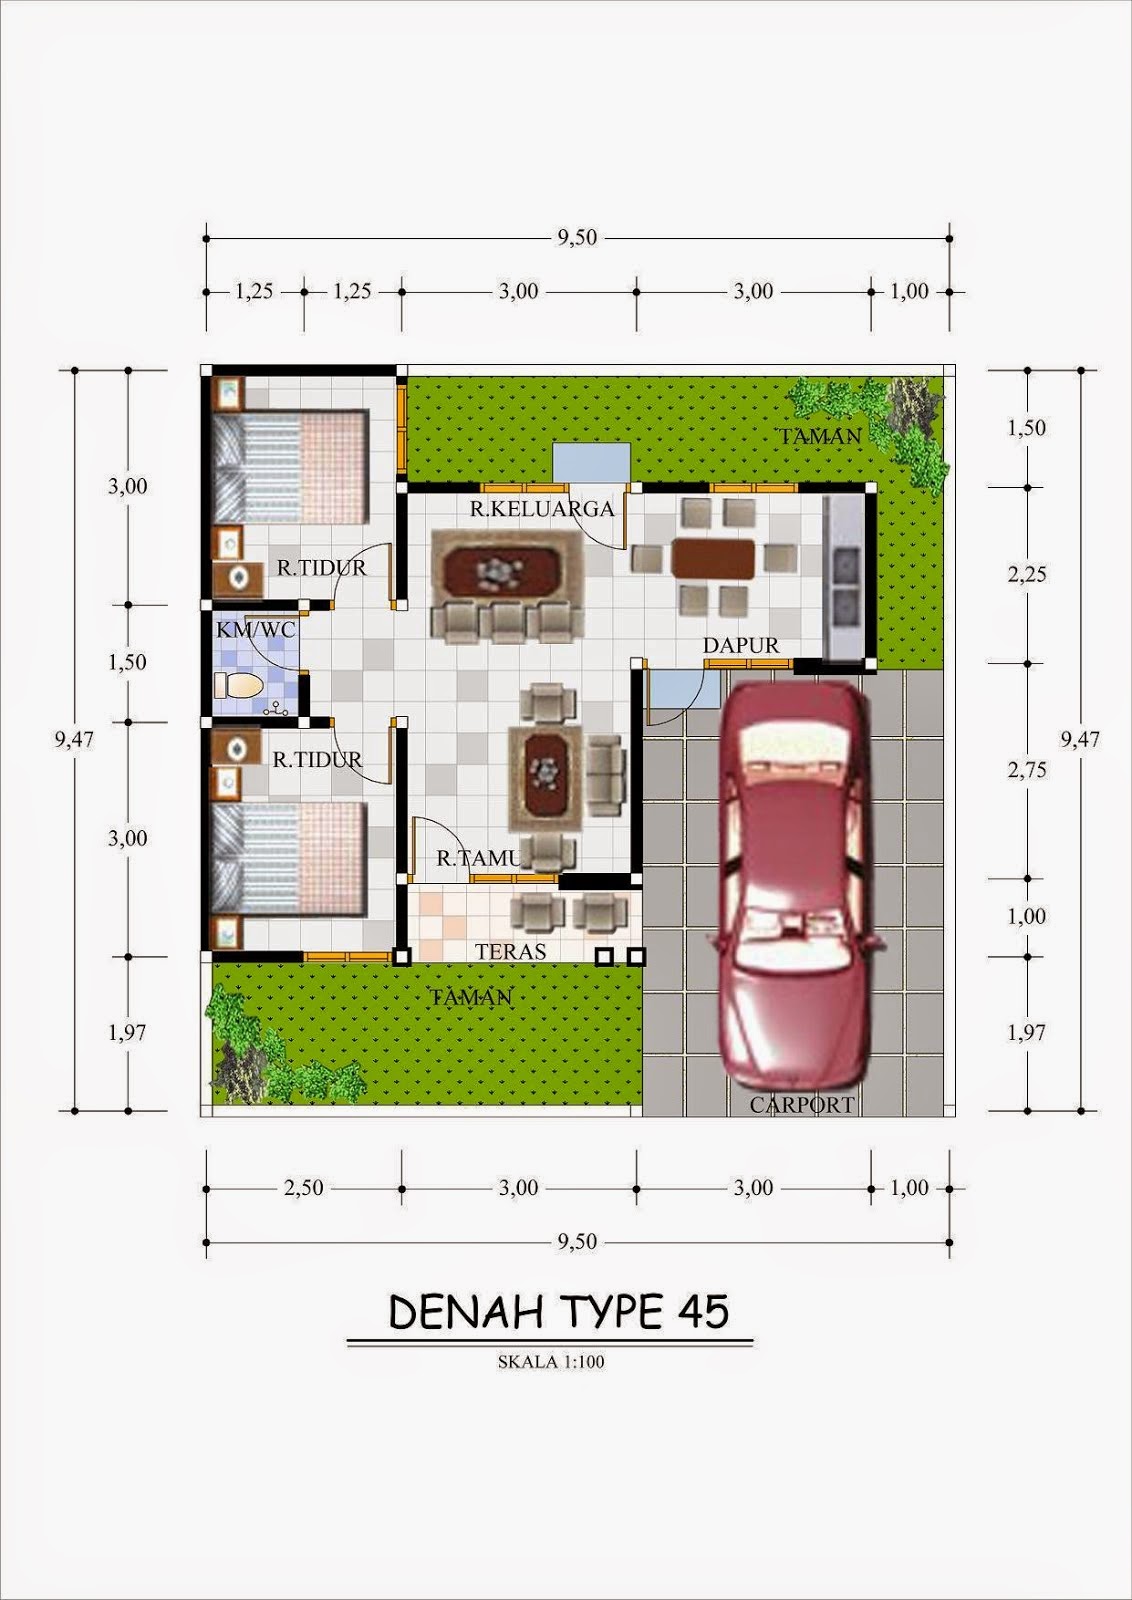  Denah  Rumah  Minimalis  Type  45  1 Lantai Terbaru  2019 